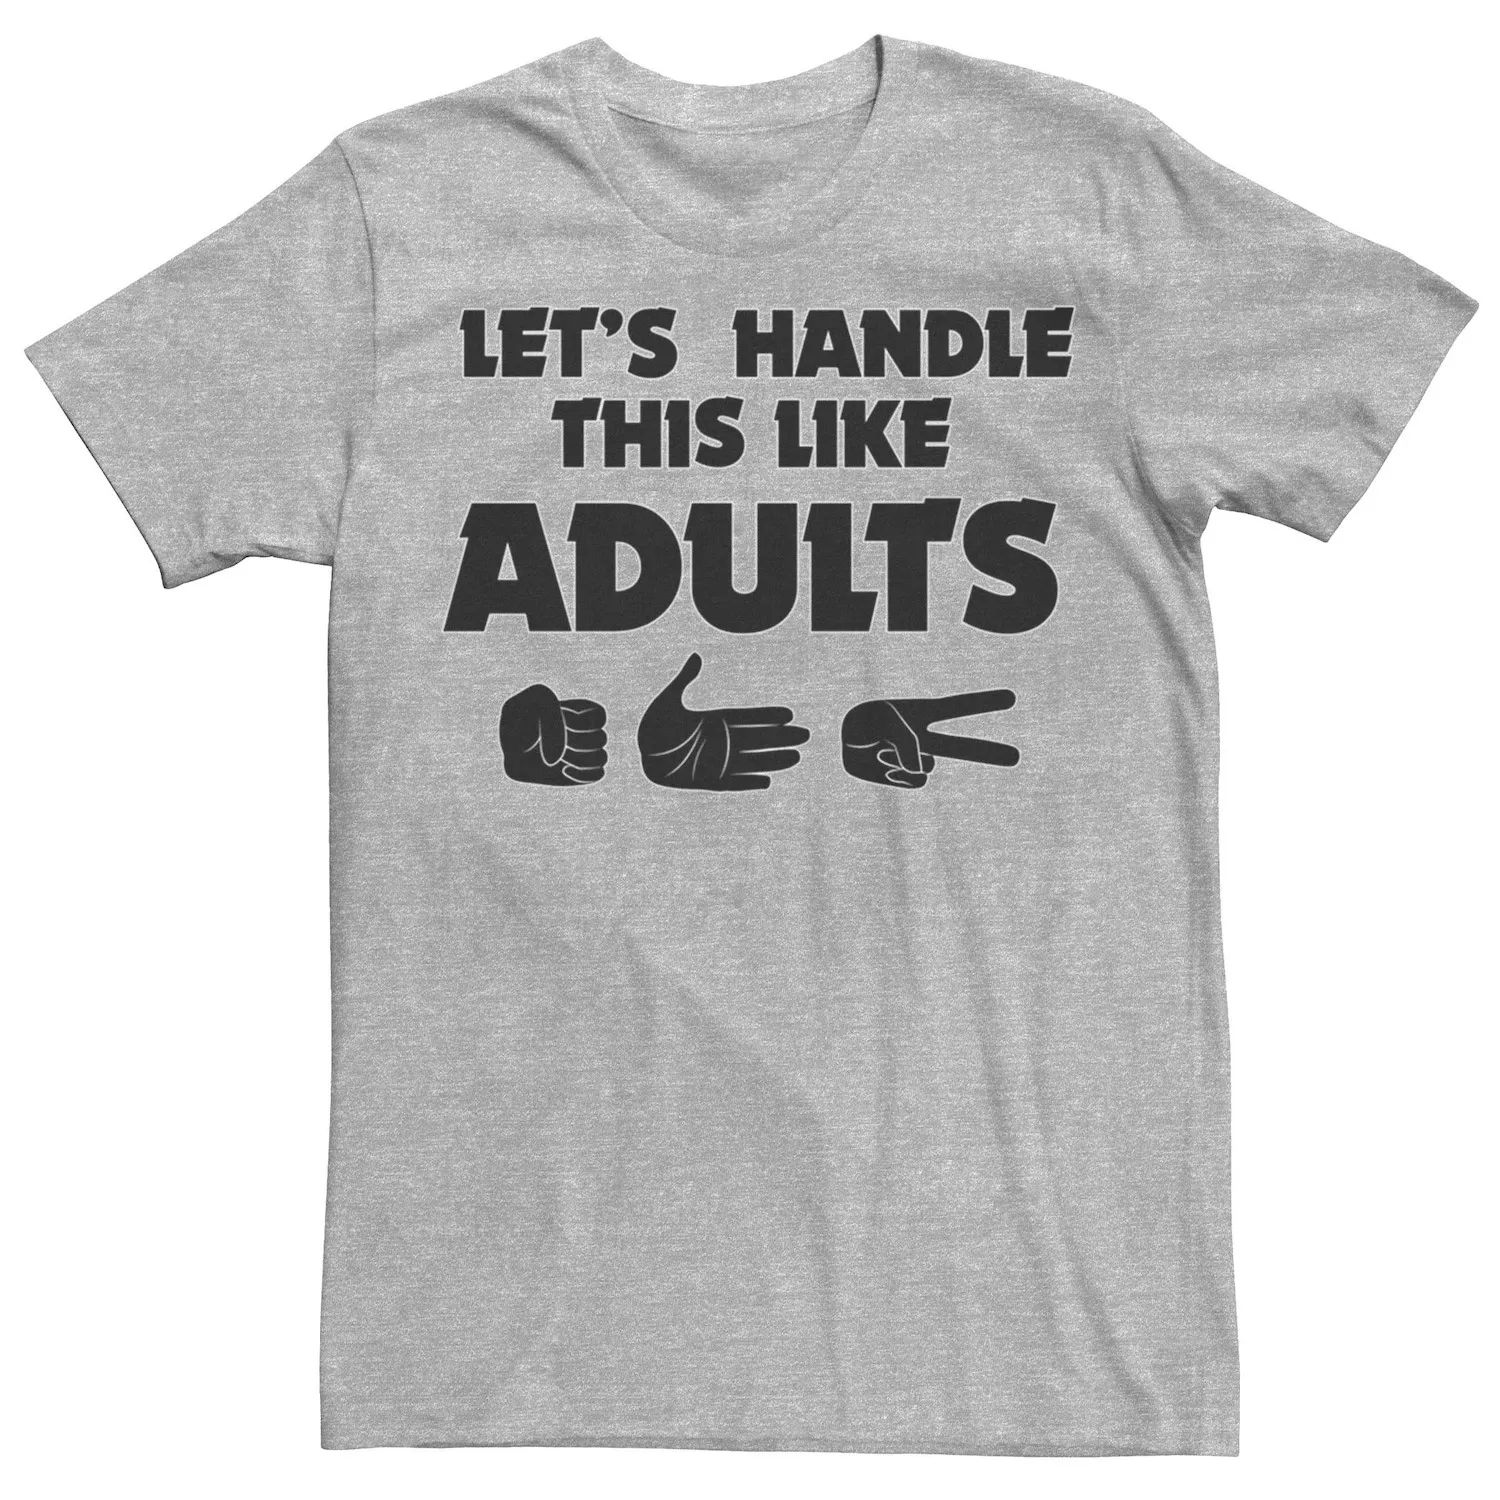 Мужская футболка с надписью Fifth Sun Like Adults Licensed Character мужская футболка с надписью fifth sun summer plans licensed character